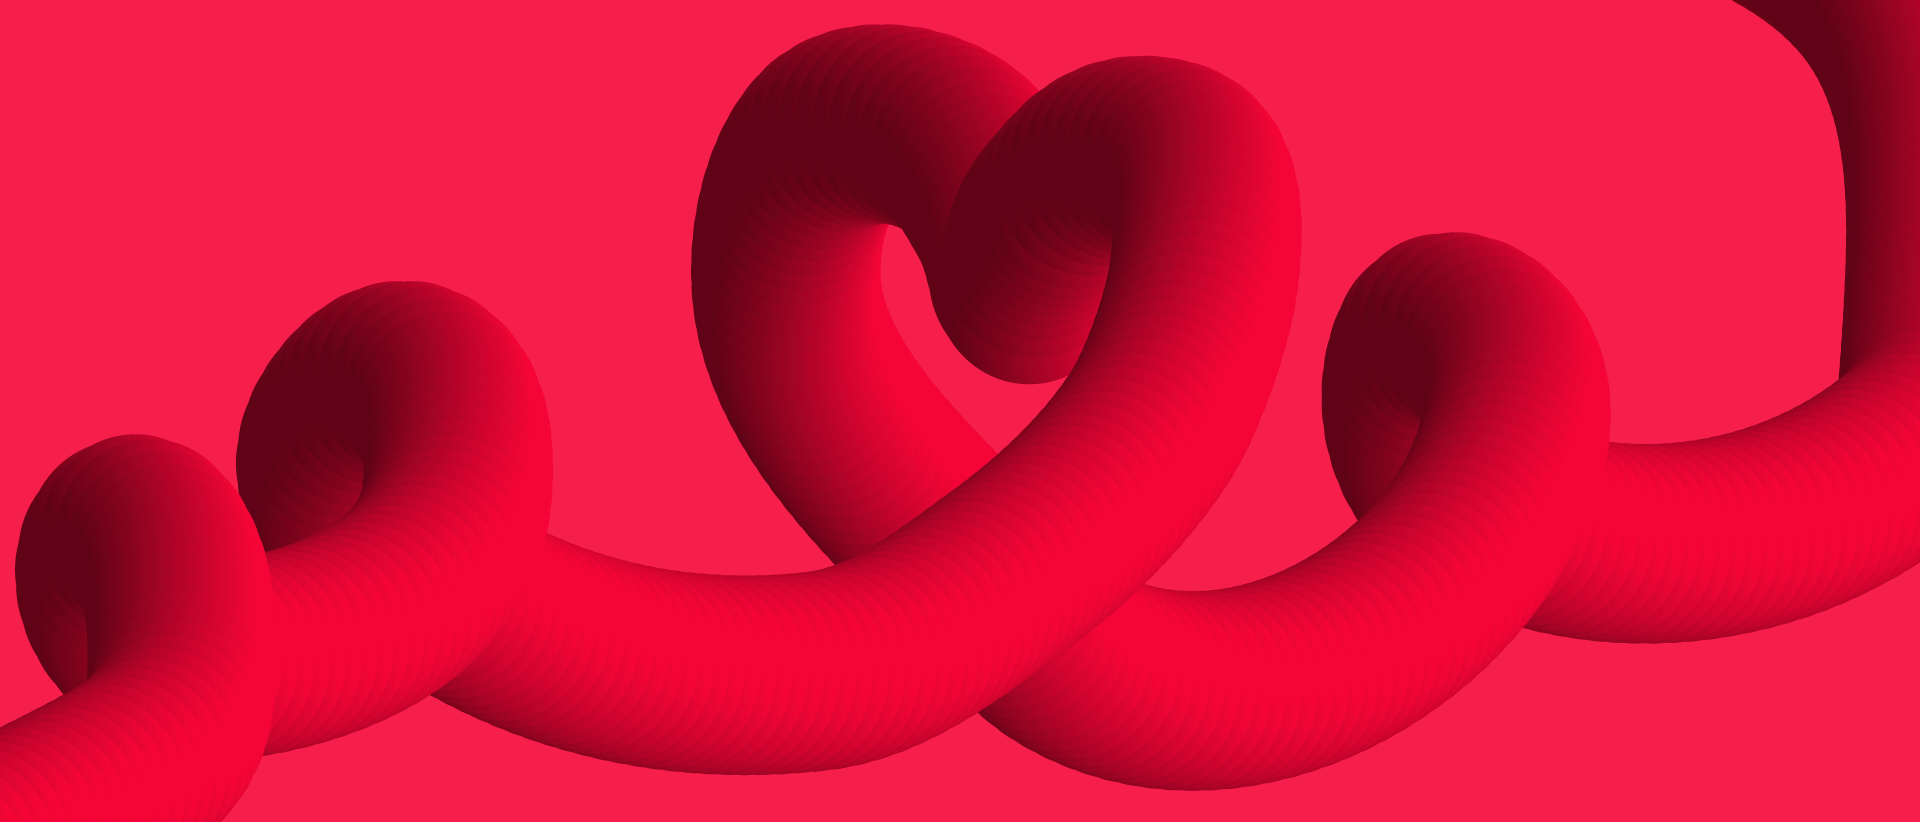 Vor einem roten Hintergrund verläuft von links nach rechts eine dreidimensionale Stilisierung eines Dünndarms, der mehrere Schlaufen bildet. Die größte Schlaufe in der Mitte hat die Form eines Herzes.